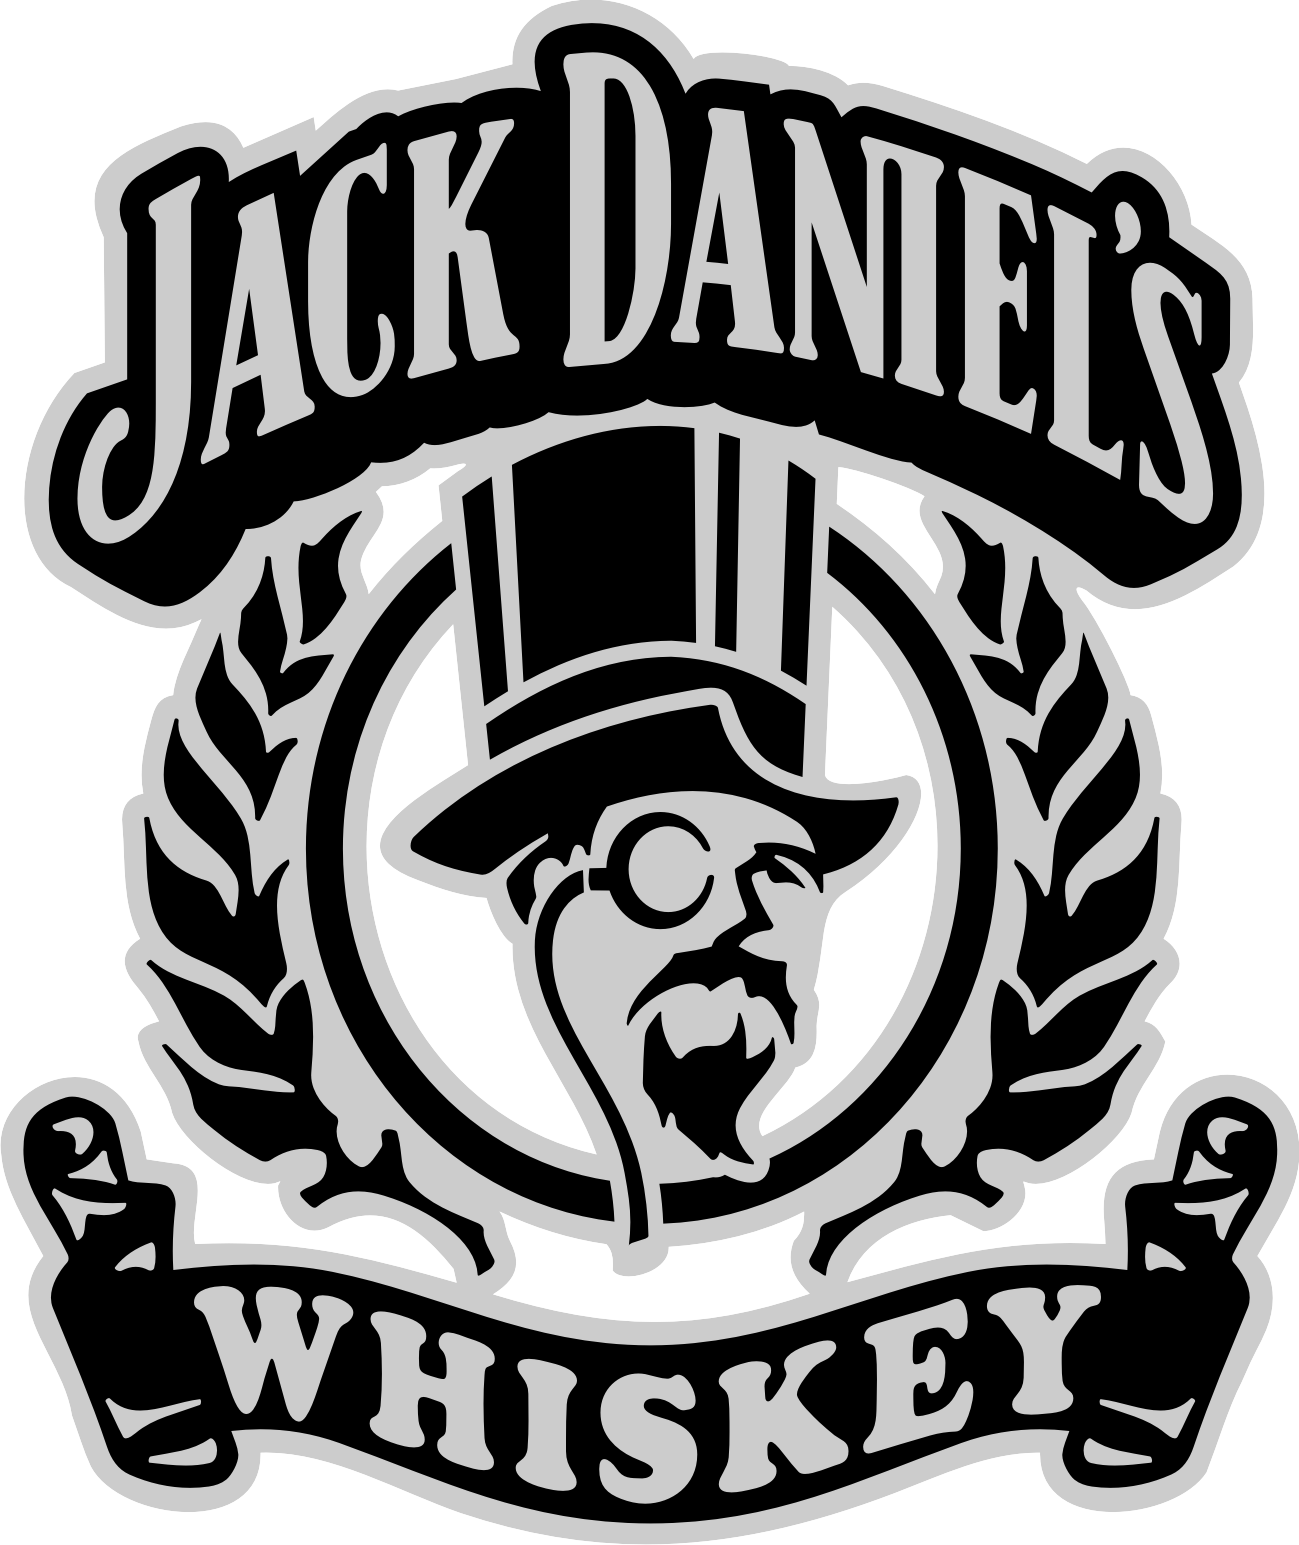 0 Result Images of Jack Daniels Logo Png Transparent - PNG Image Collection